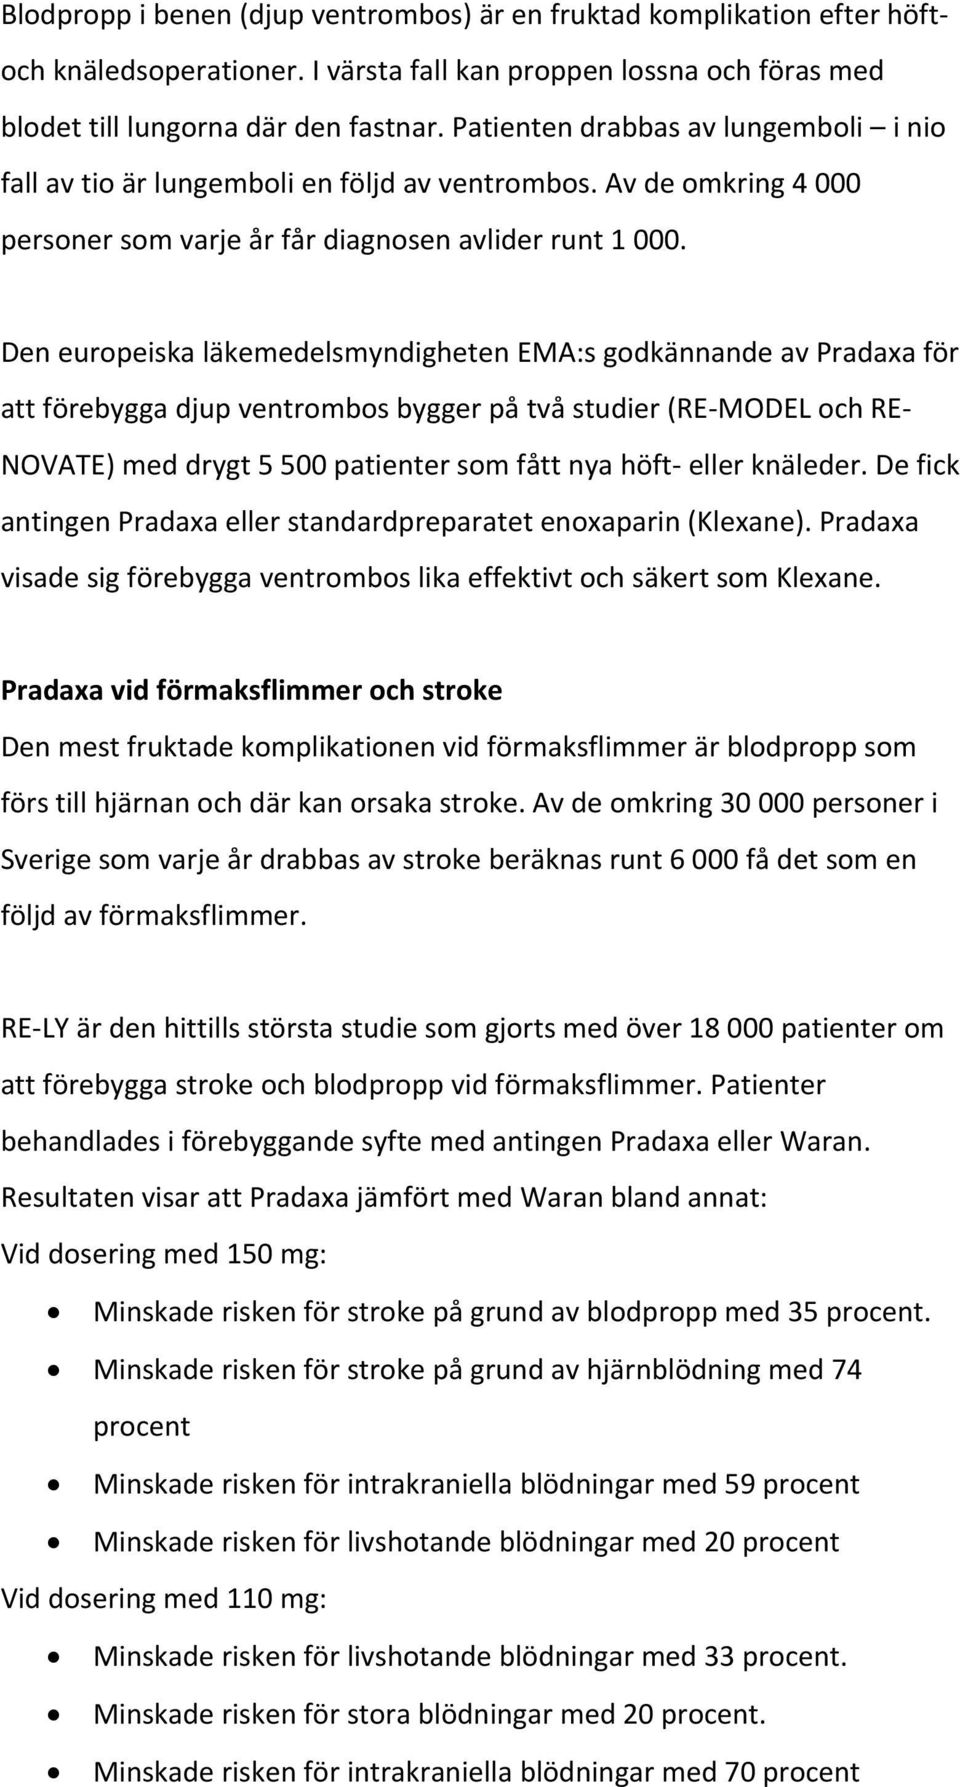 Den europeiska läkemedelsmyndigheten EMA:s godkännande av Pradaxa för att förebygga djup ventrombos bygger på två studier (RE MODEL och RE NOVATE) med drygt 5 500 patienter som fått nya höft eller